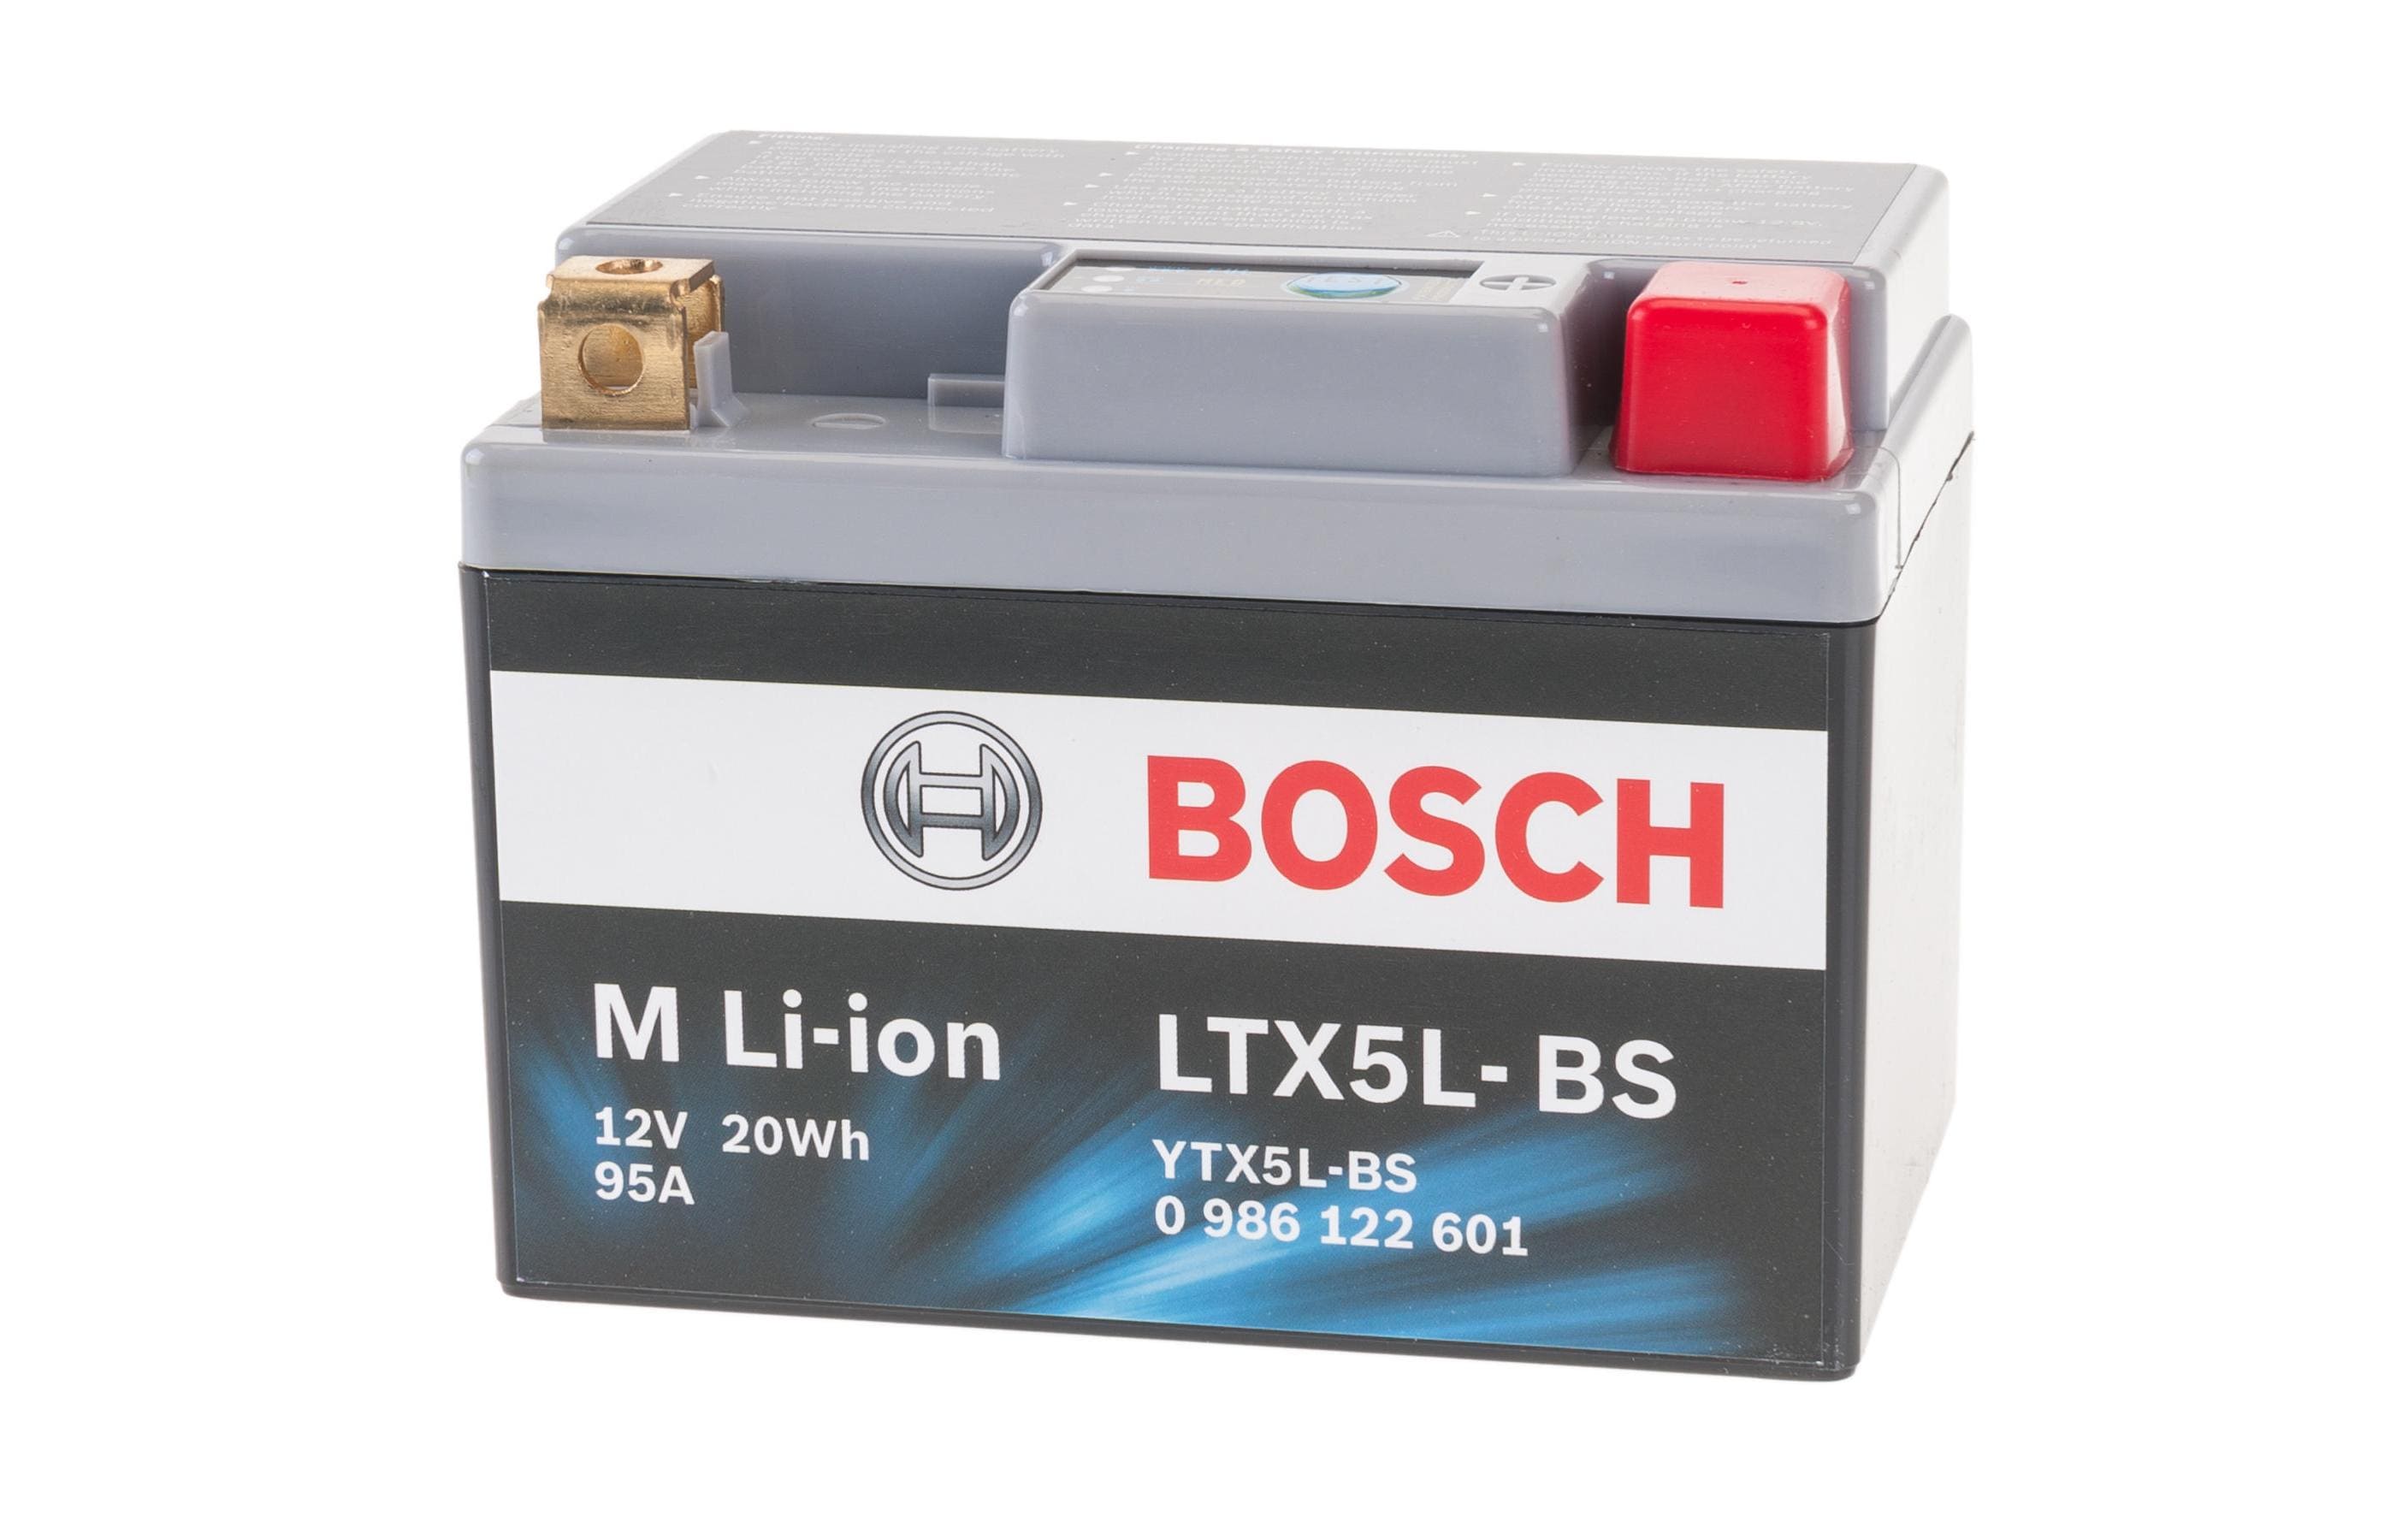 Bosch Automotive Motorradbatterie LTX5L-BS 1.6 Ah